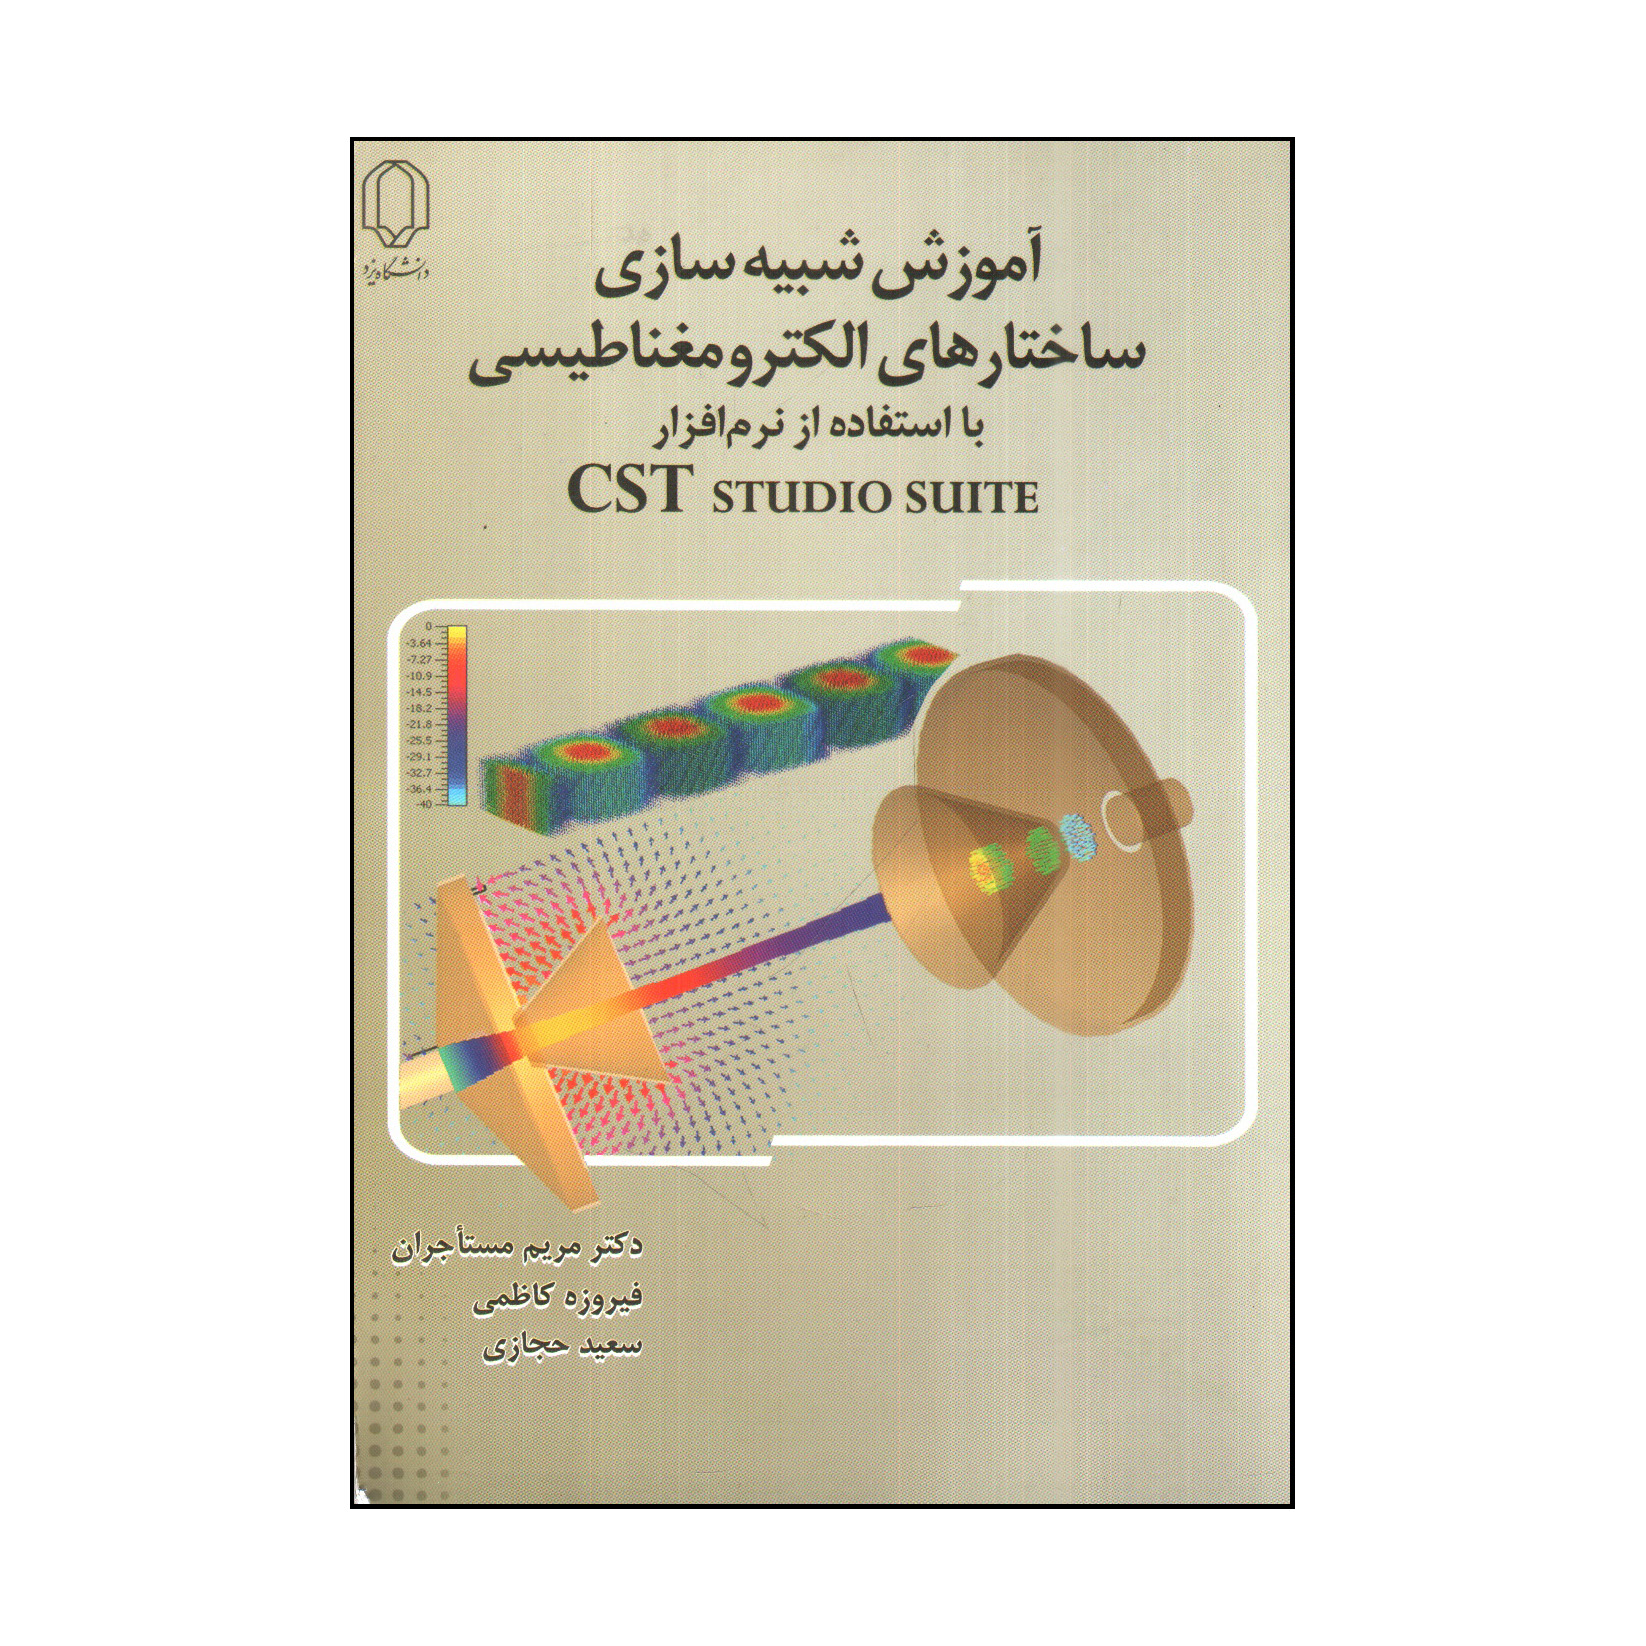 کتاب آموزش شبيه سازی ساختارهای الكترومغناطيسی با استفاده از نرم افزار CST studio suite اثر جمعی از نویسندگان انتشارات دانشگاه یزد